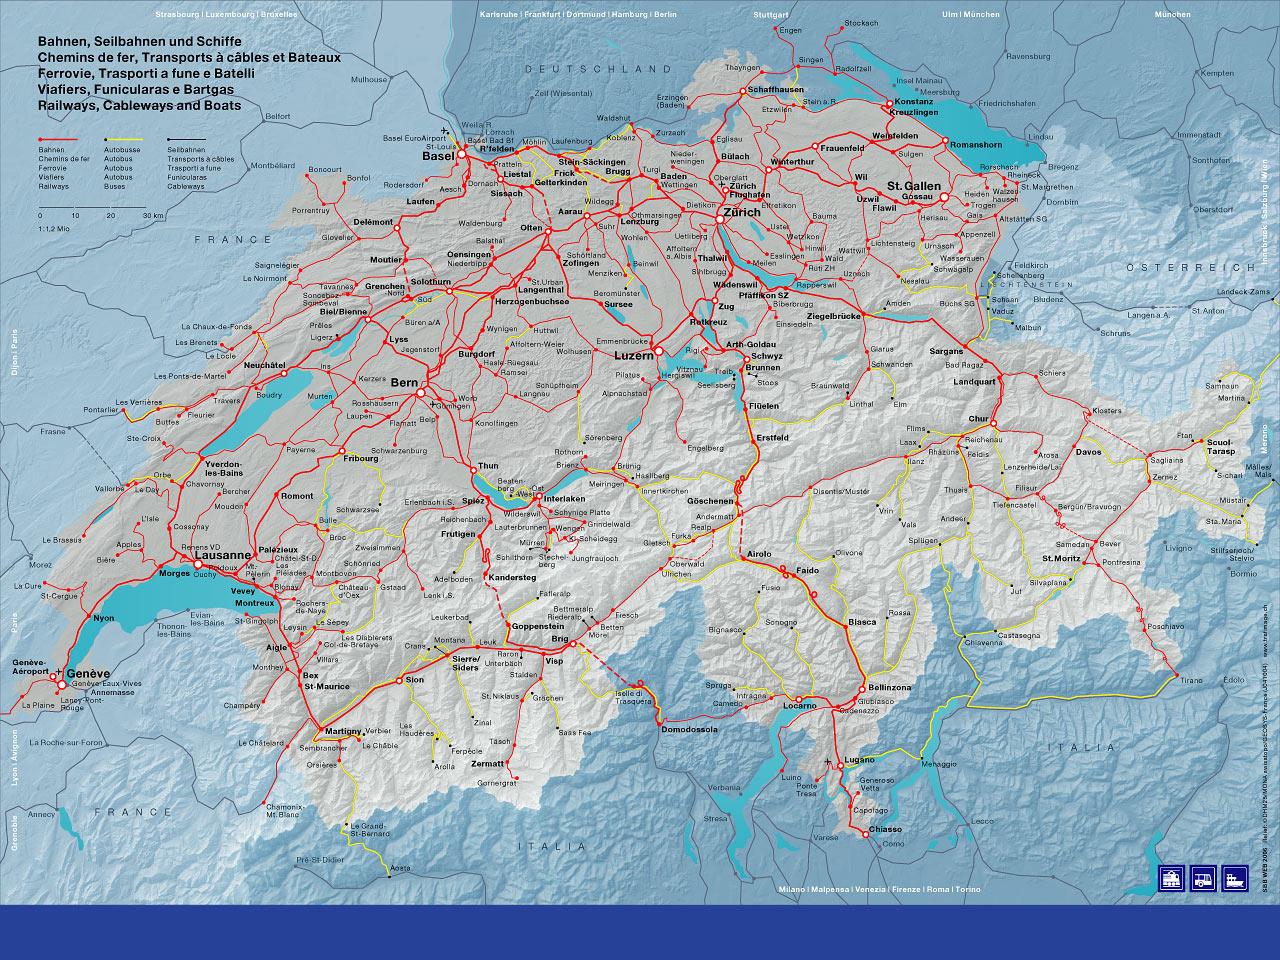 Itinerarios Suiza: Rutas, visitas, ciudades y pueblos - Foro Alemania, Austria, Suiza